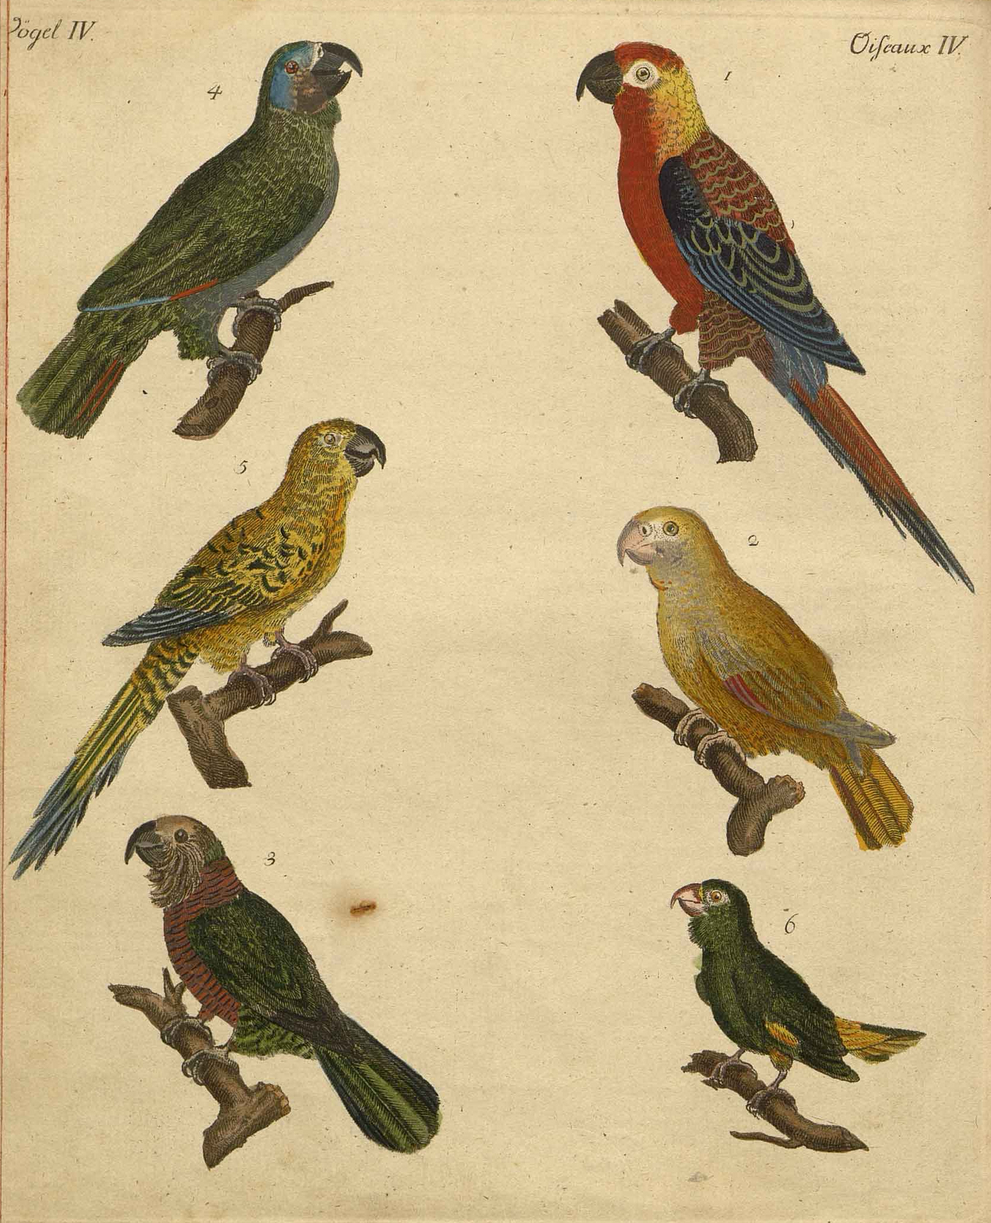 Abbildung von Vögeln aus Friedrich Justin Bertuch "Bilderbuch Für Kinder"